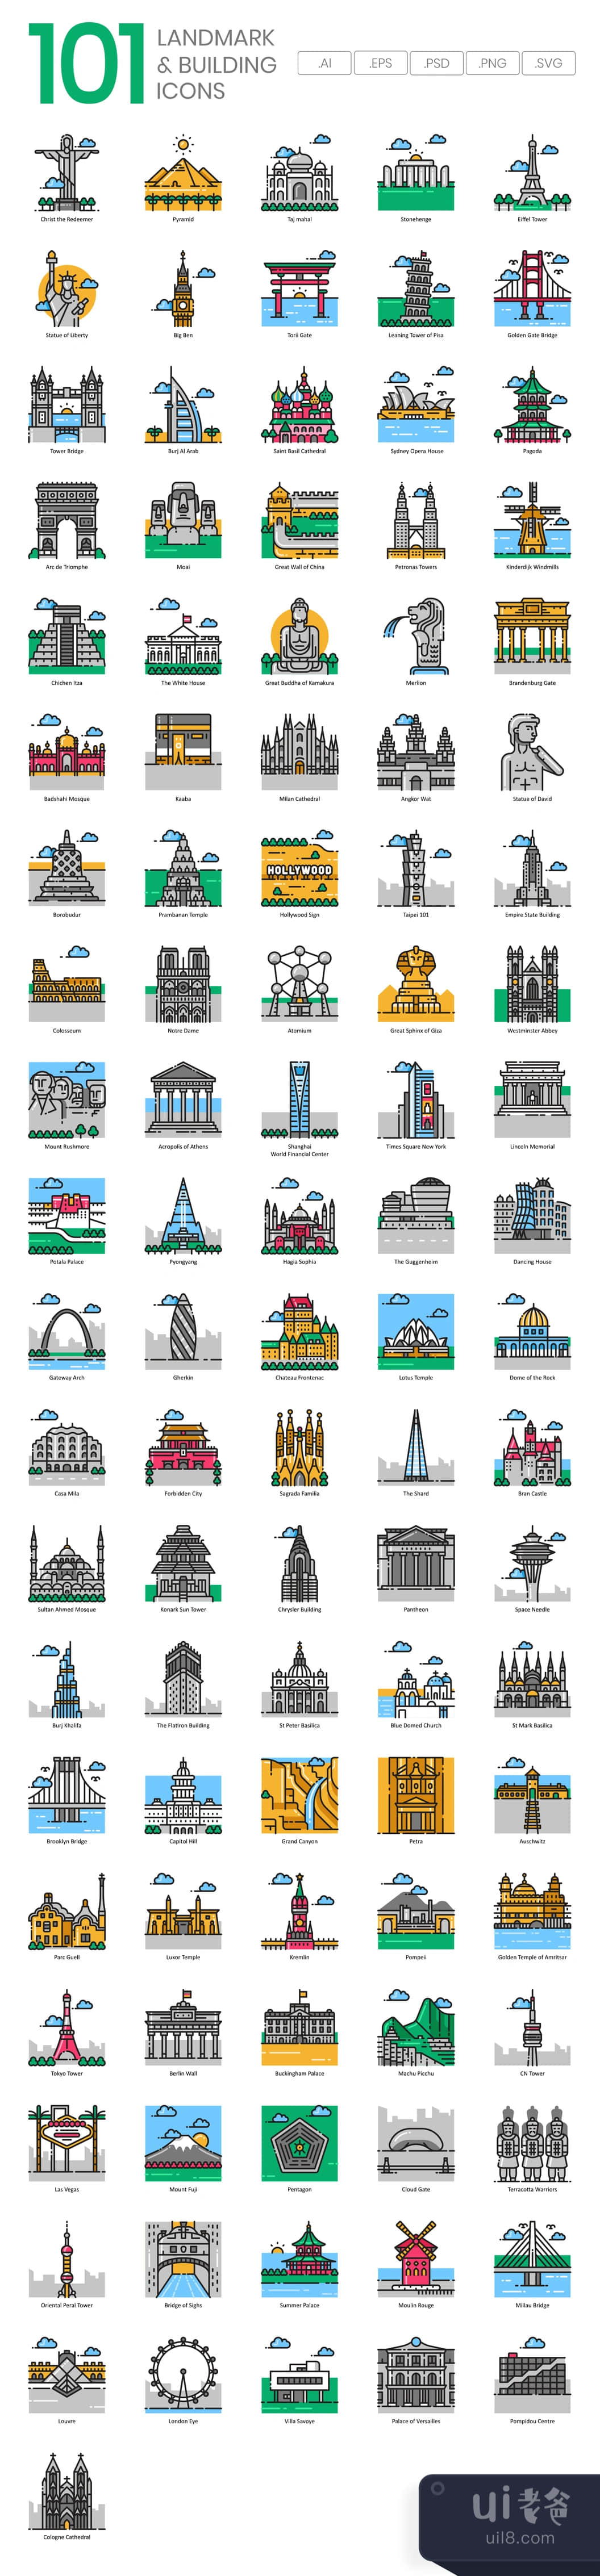 地标和建筑图标 (Landmark & Building Icons)插图1